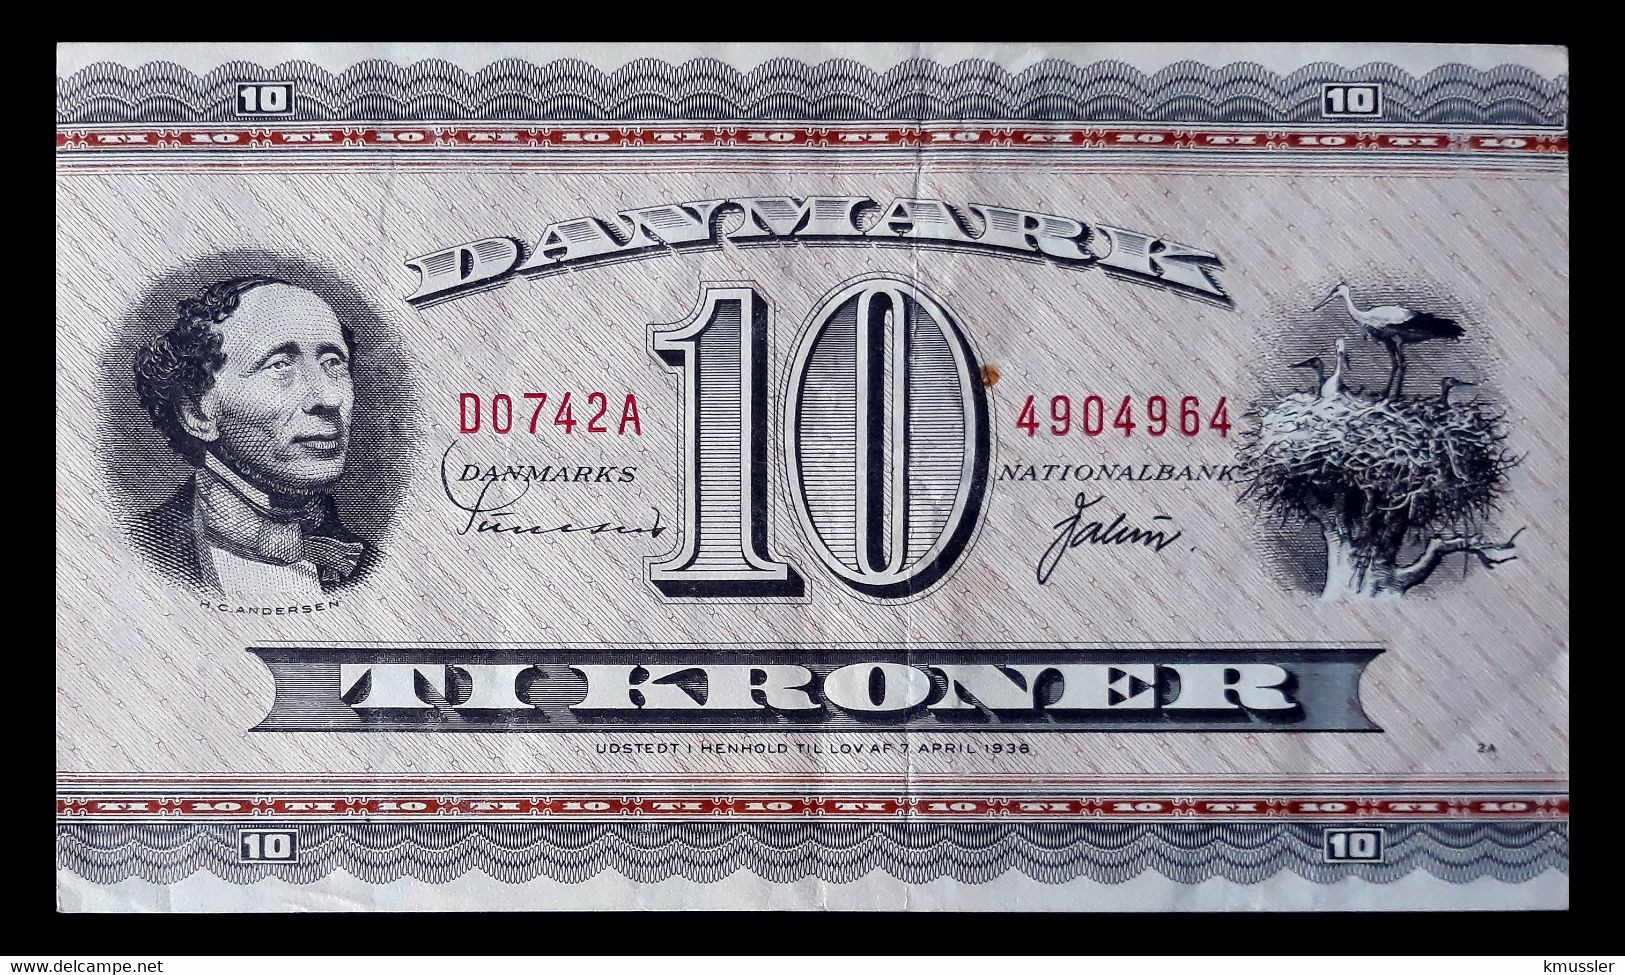 # # # Banknote Dänemark (Denmark) 10 Kroner 1936 # # # - Danemark